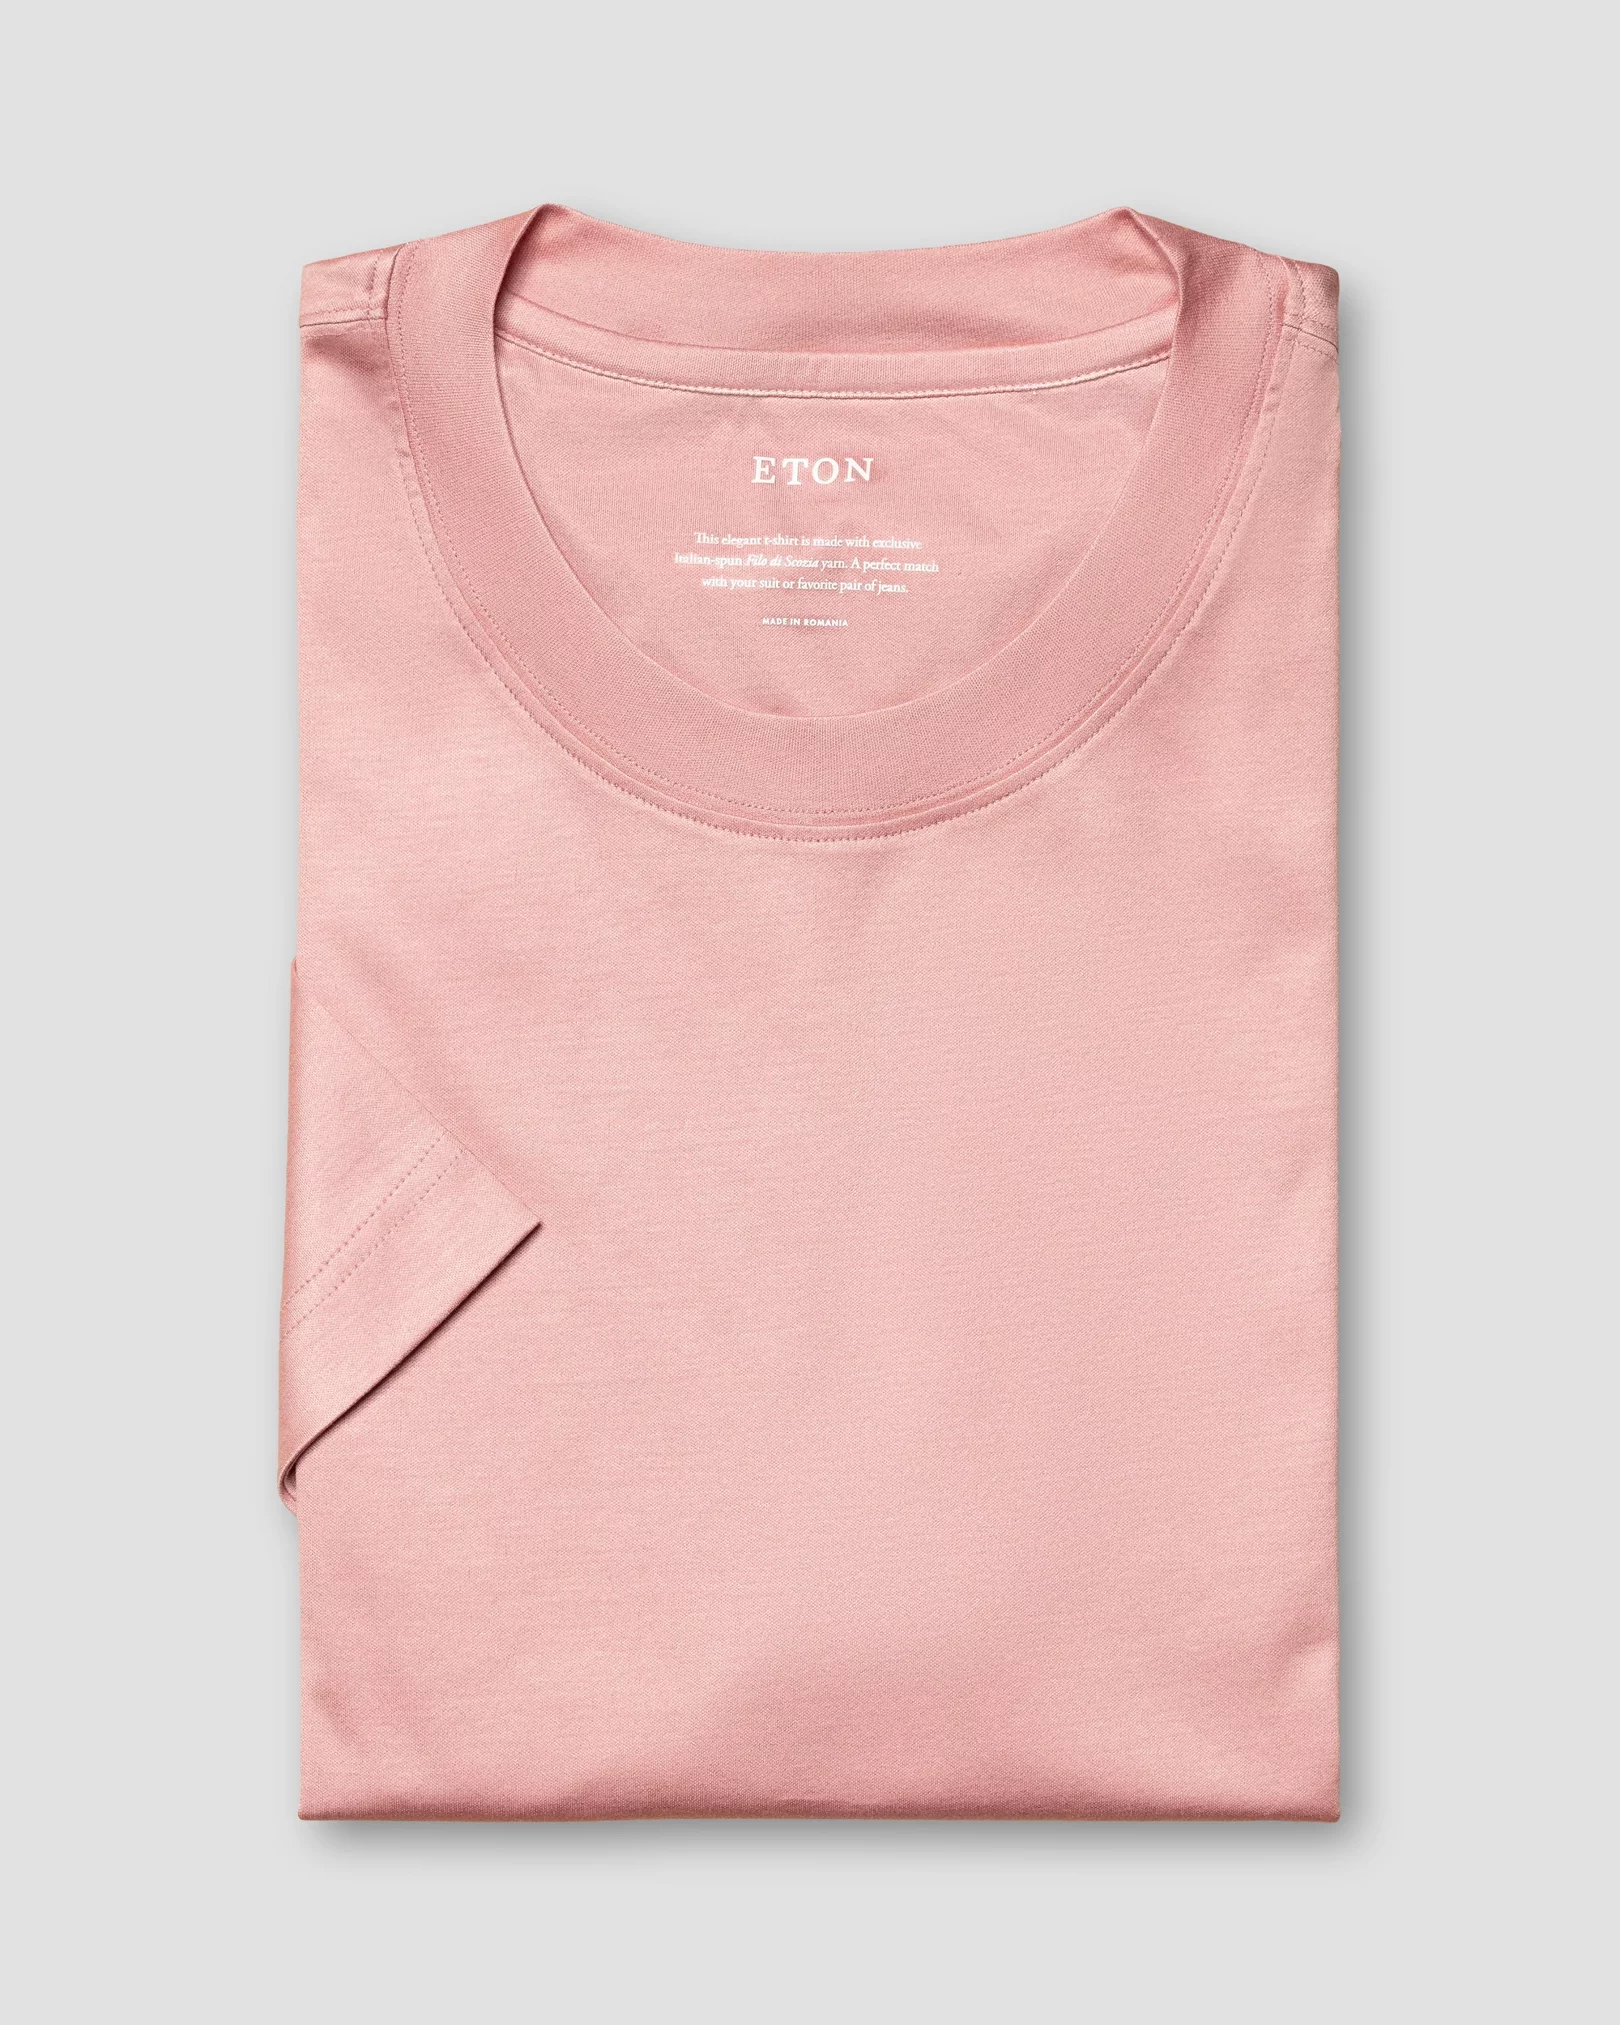 Eton - pink jersey t shirt